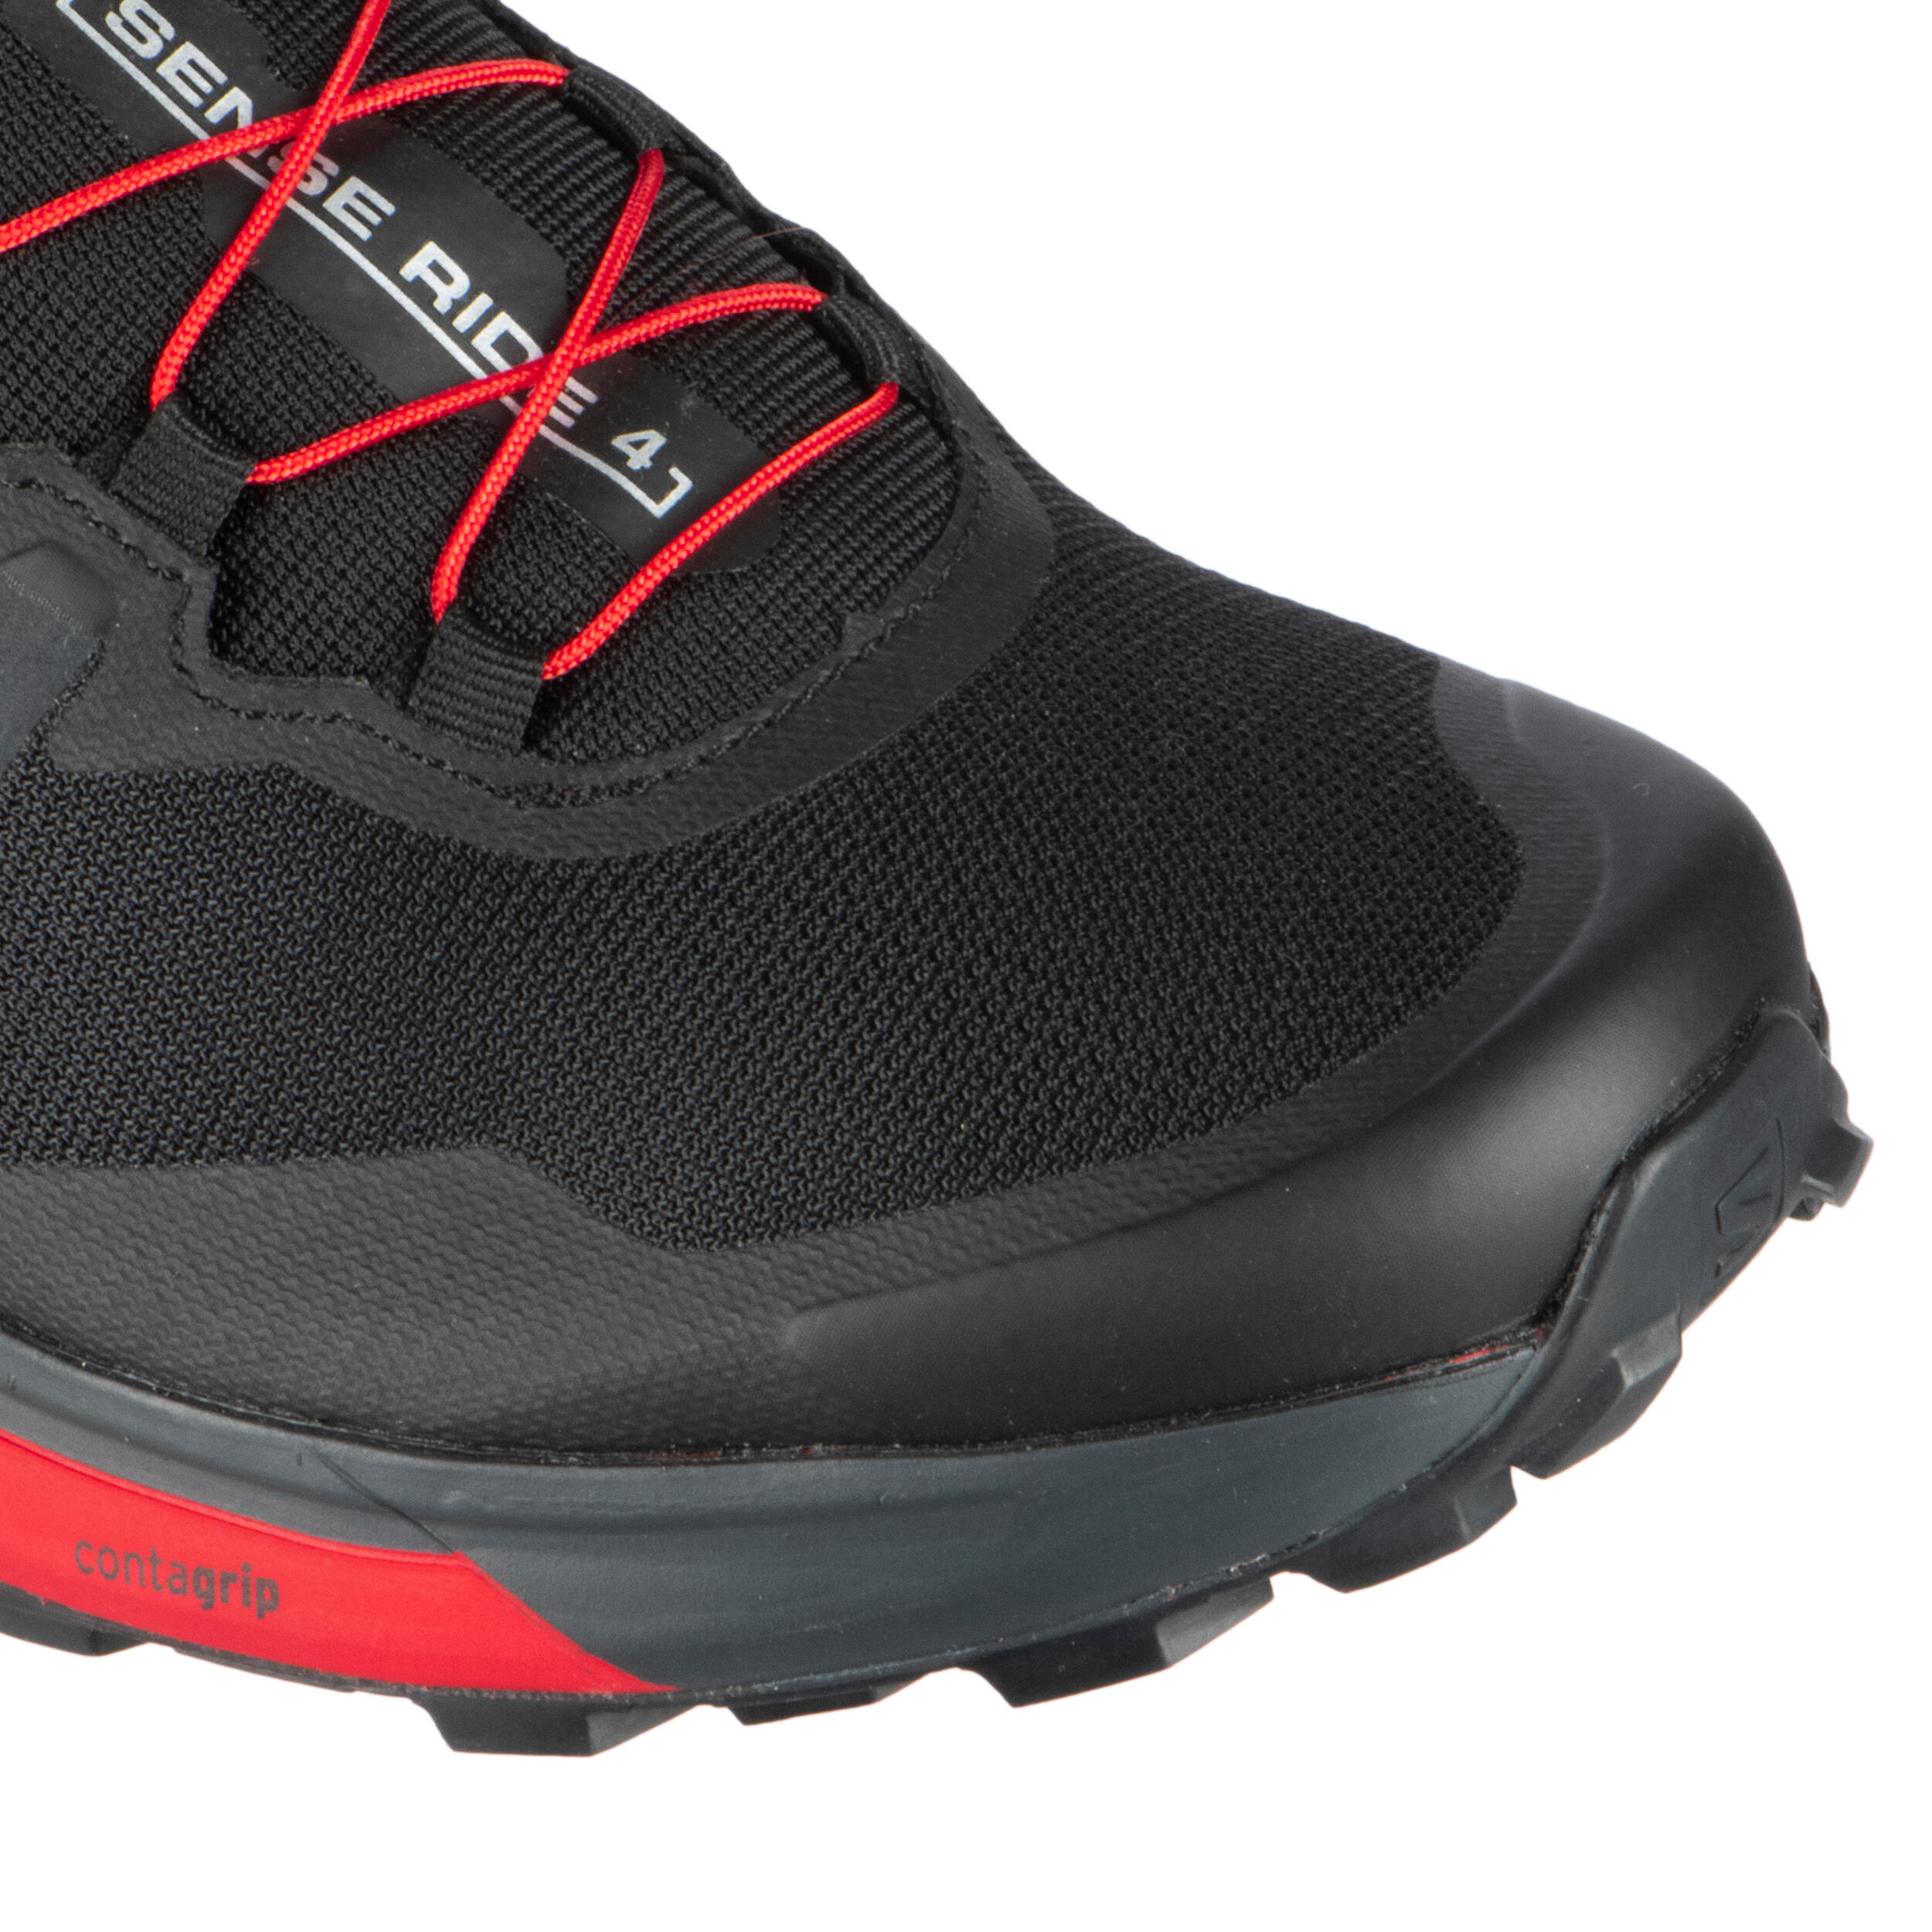 Trail Running Shoe Salomon Sense Ride 4 - black red 9/12